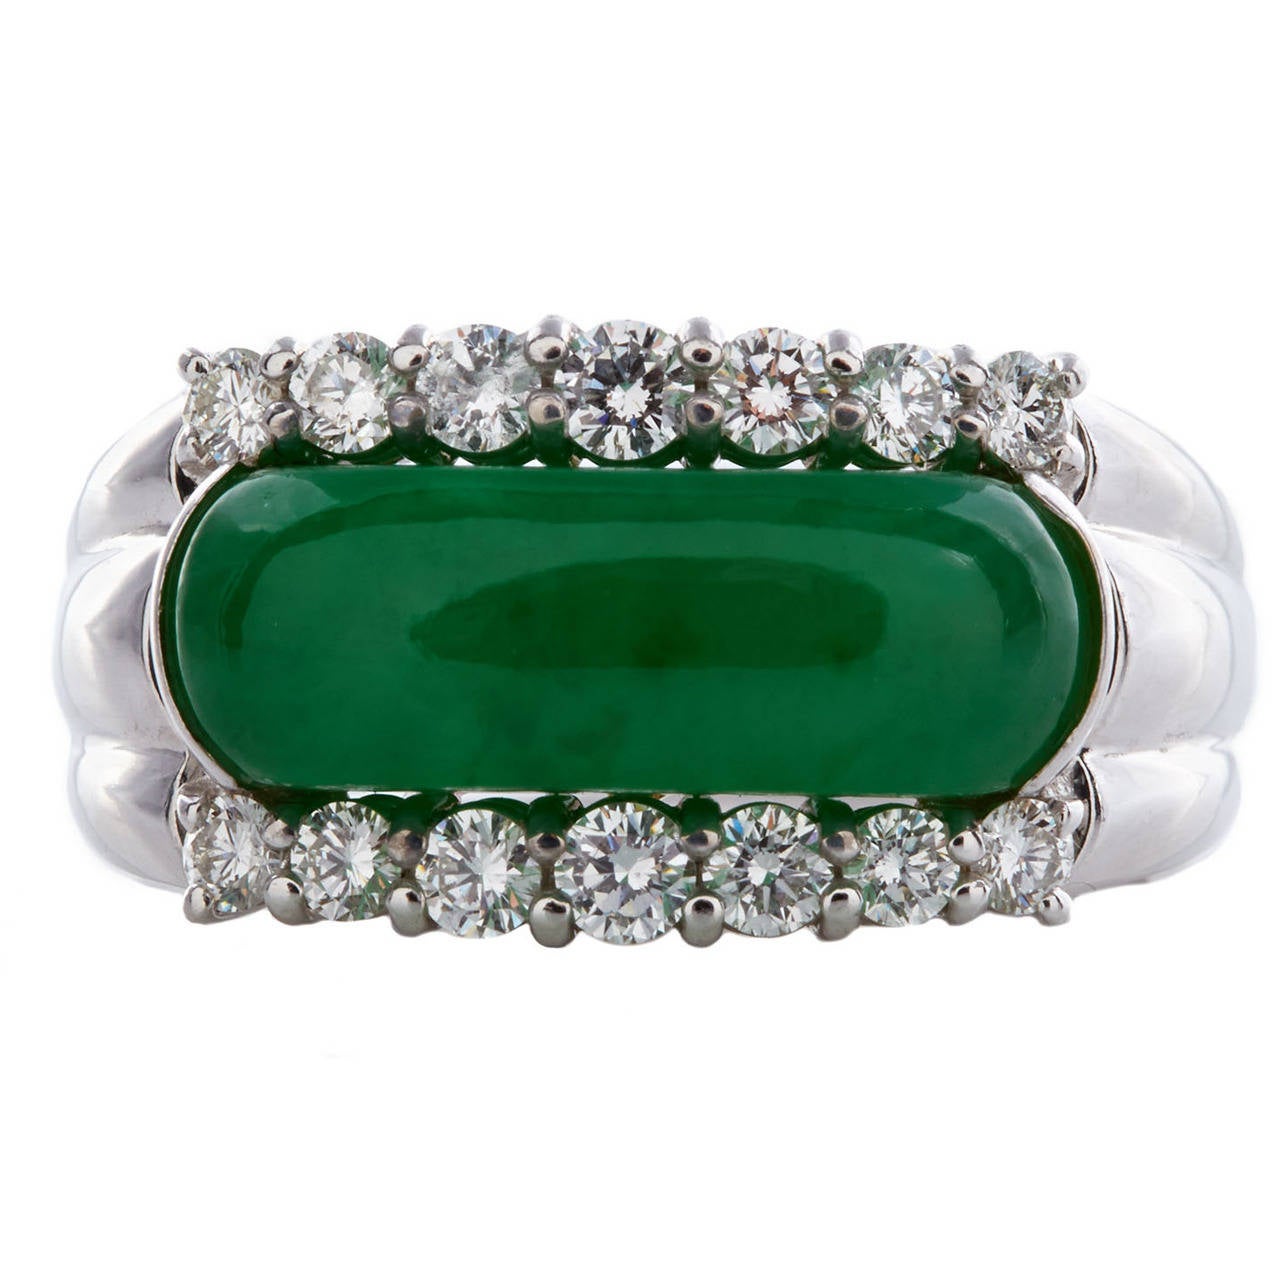 GIA Cert Natural Translucent Jadeite Jade Ring circa 1950s-60s